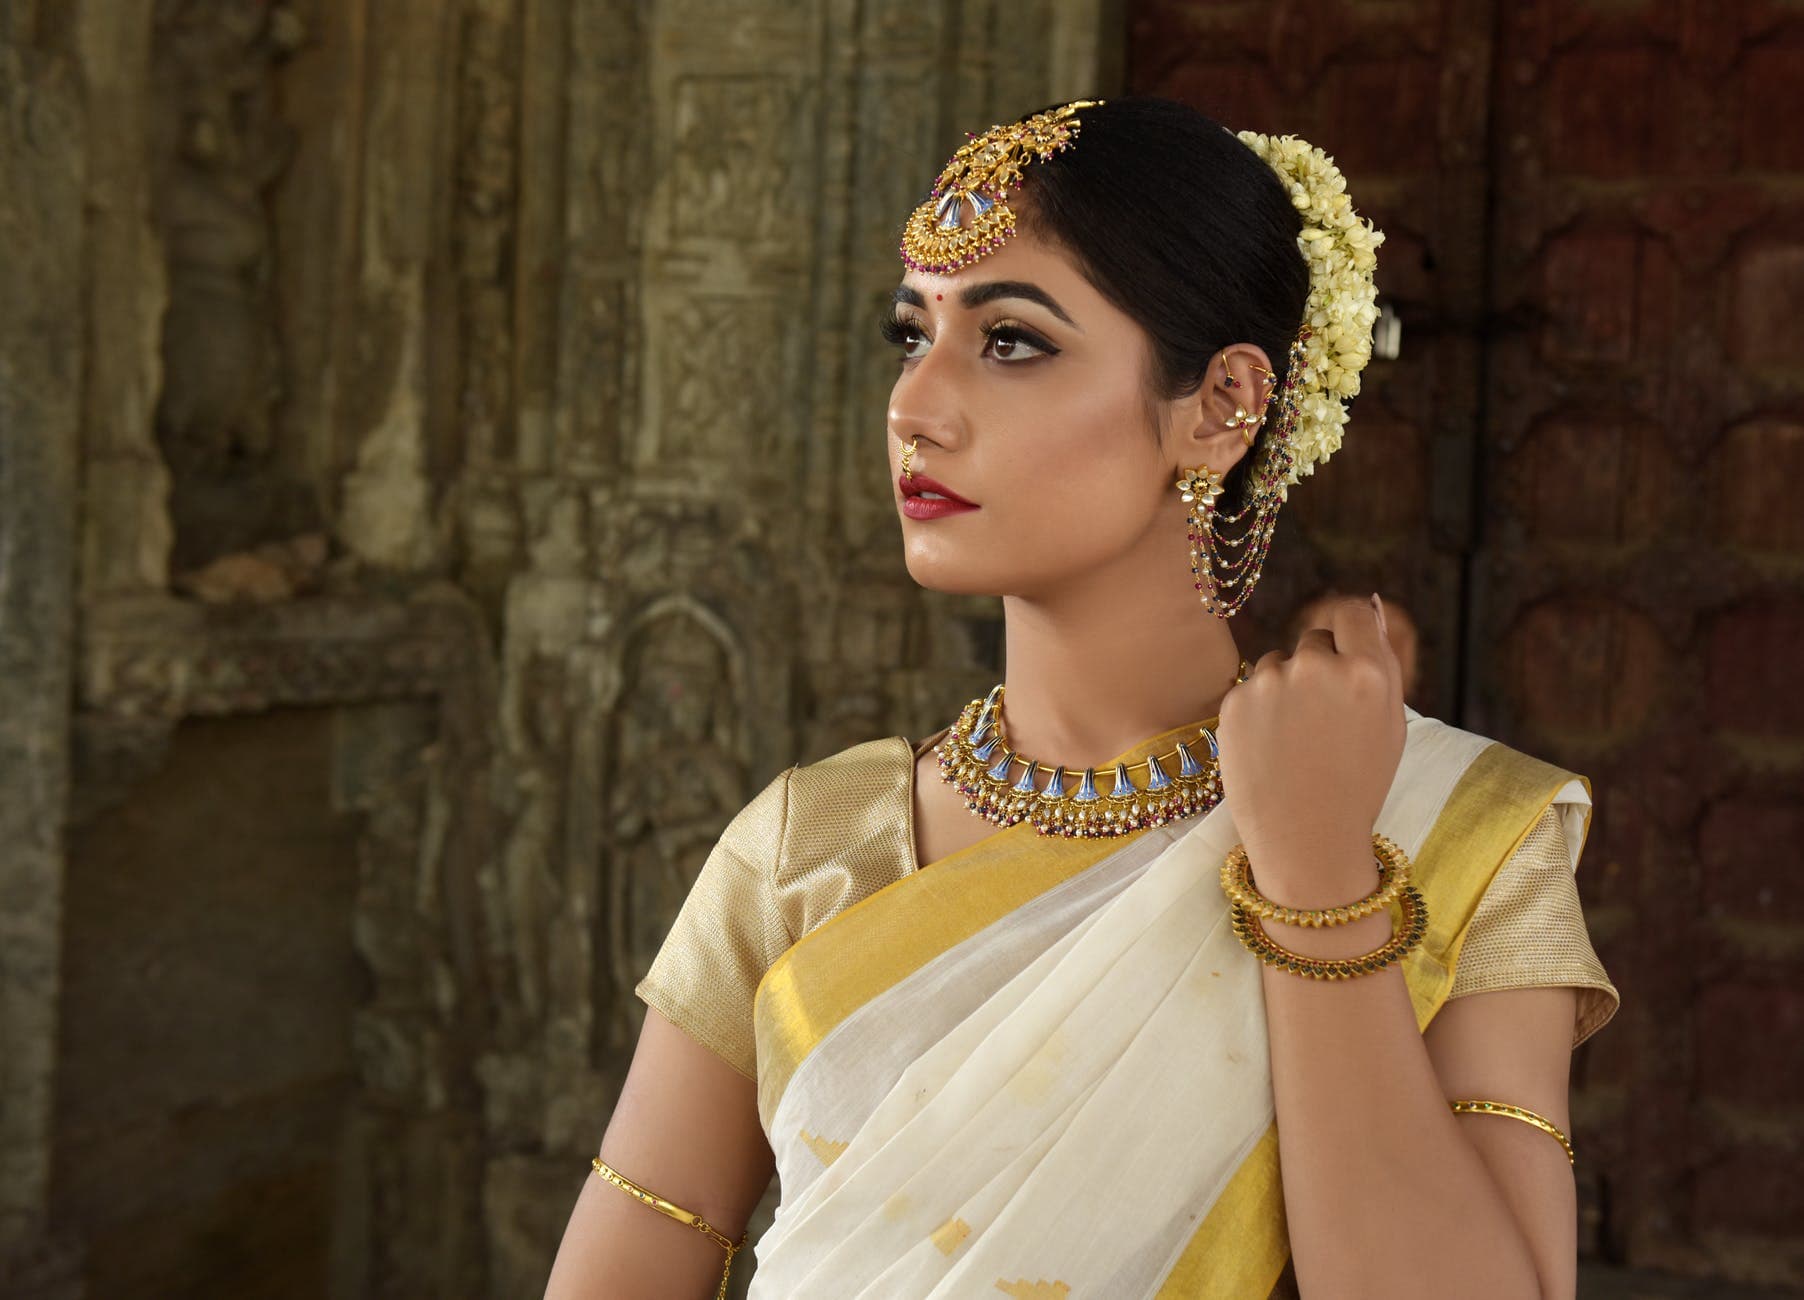 IndianJewelByDeepthi | Silver jewelry fashion, Silver jewellery indian,  Indian jewellery design earrings